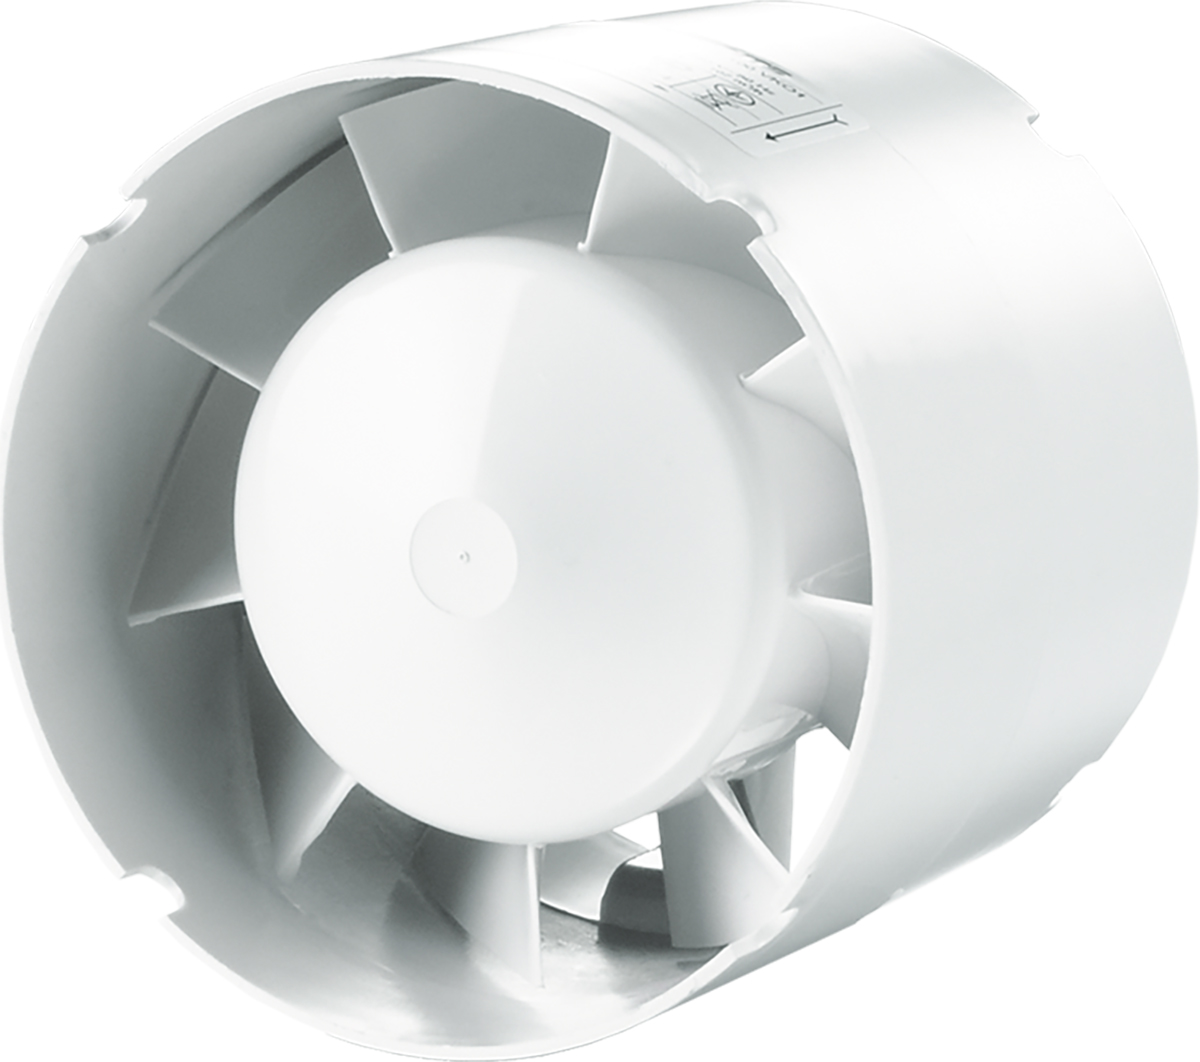 Канальный вентилятор с таймером отключения Вентс 125 ВКО1Т турбо (220/60)